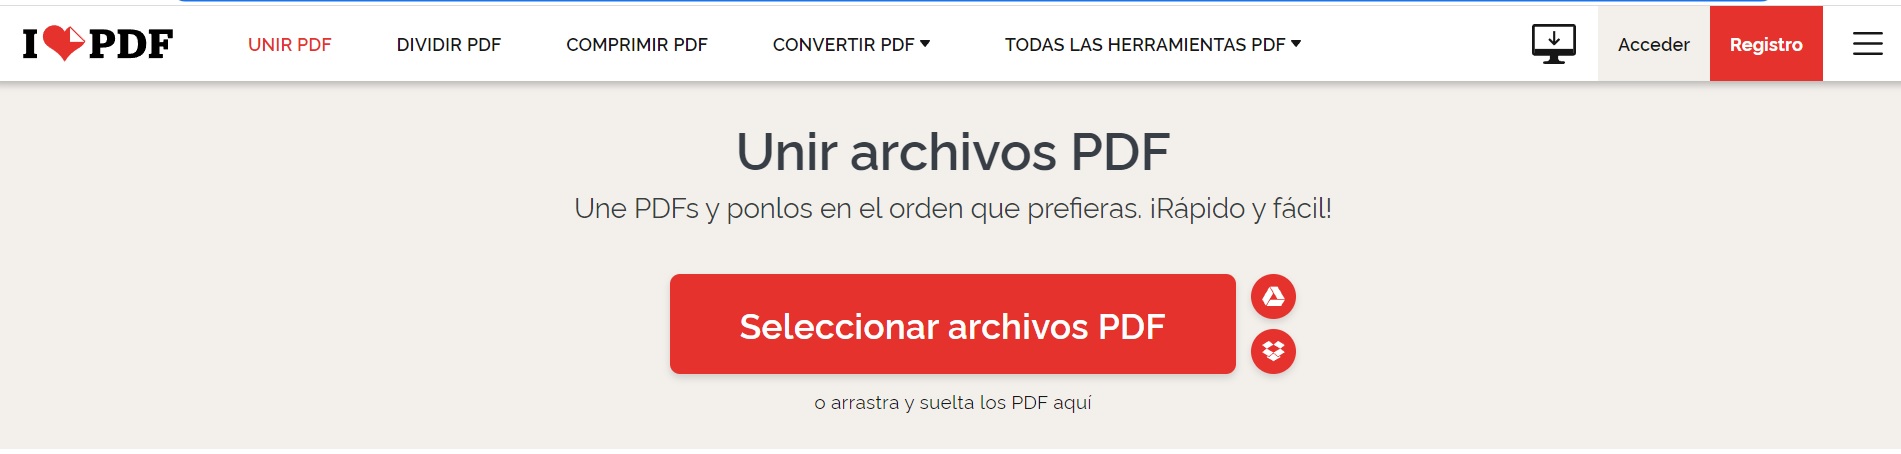 Siete opciones para convertir PDF a diferentes formatos - Infobae